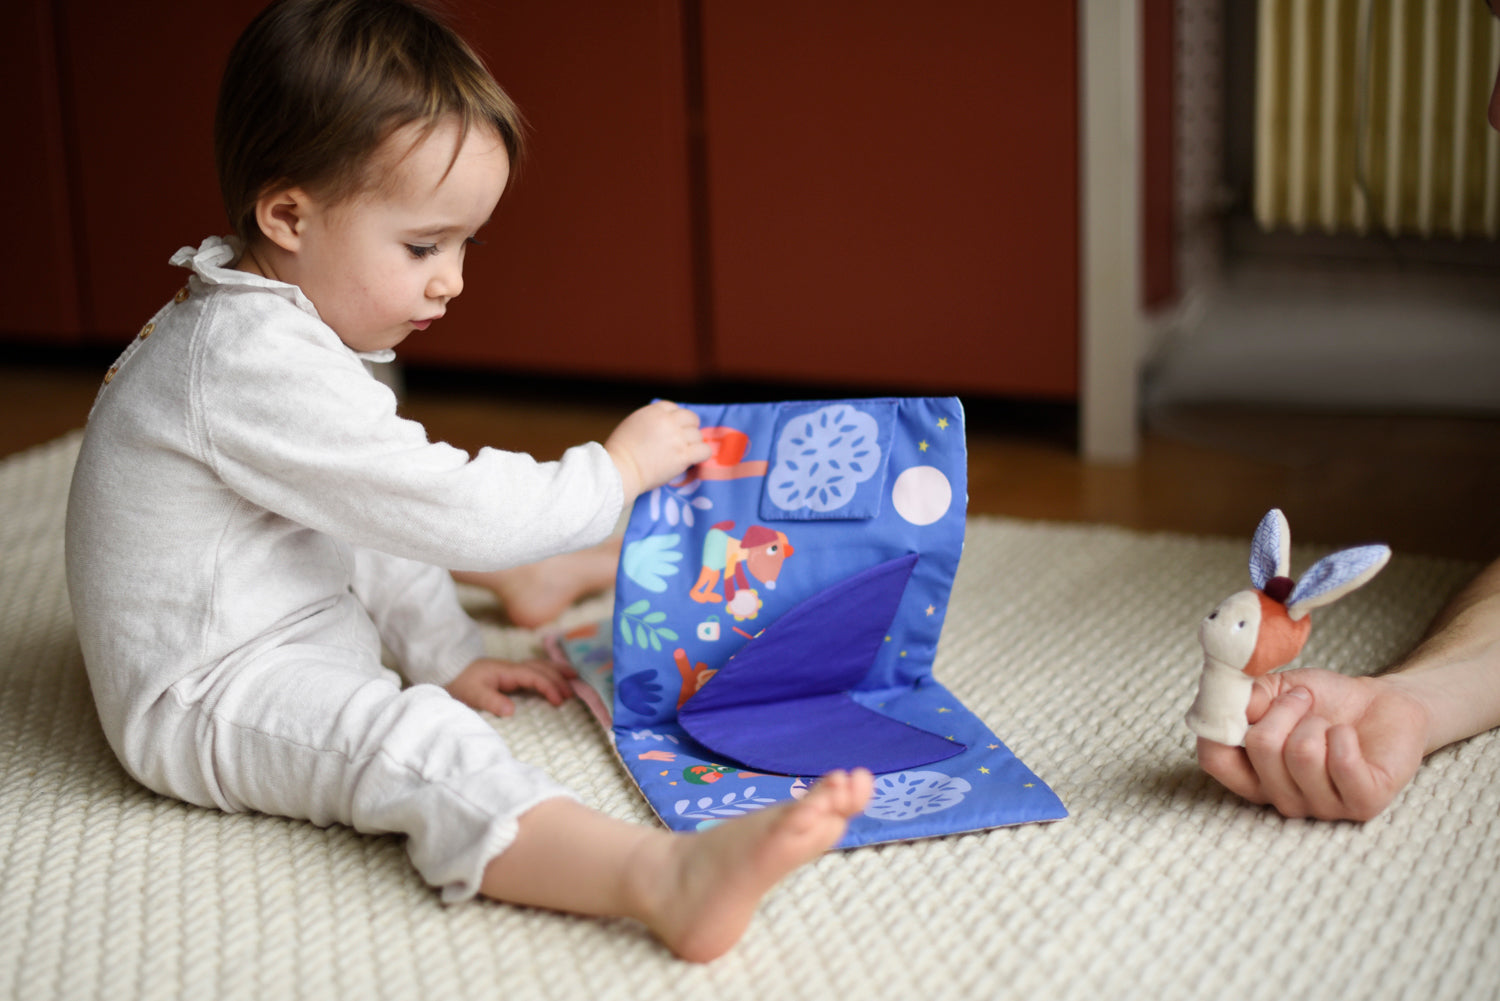 Livre en tissu pour bébé, grand format, pop up le livre s'anime à chaque page tournée avec l'apparition d'un décor. Sur la photo, un petit garçon tourne les pages de son livre, on imagine sa curiosité et on le perçoit très concentré sur l'histoire. 